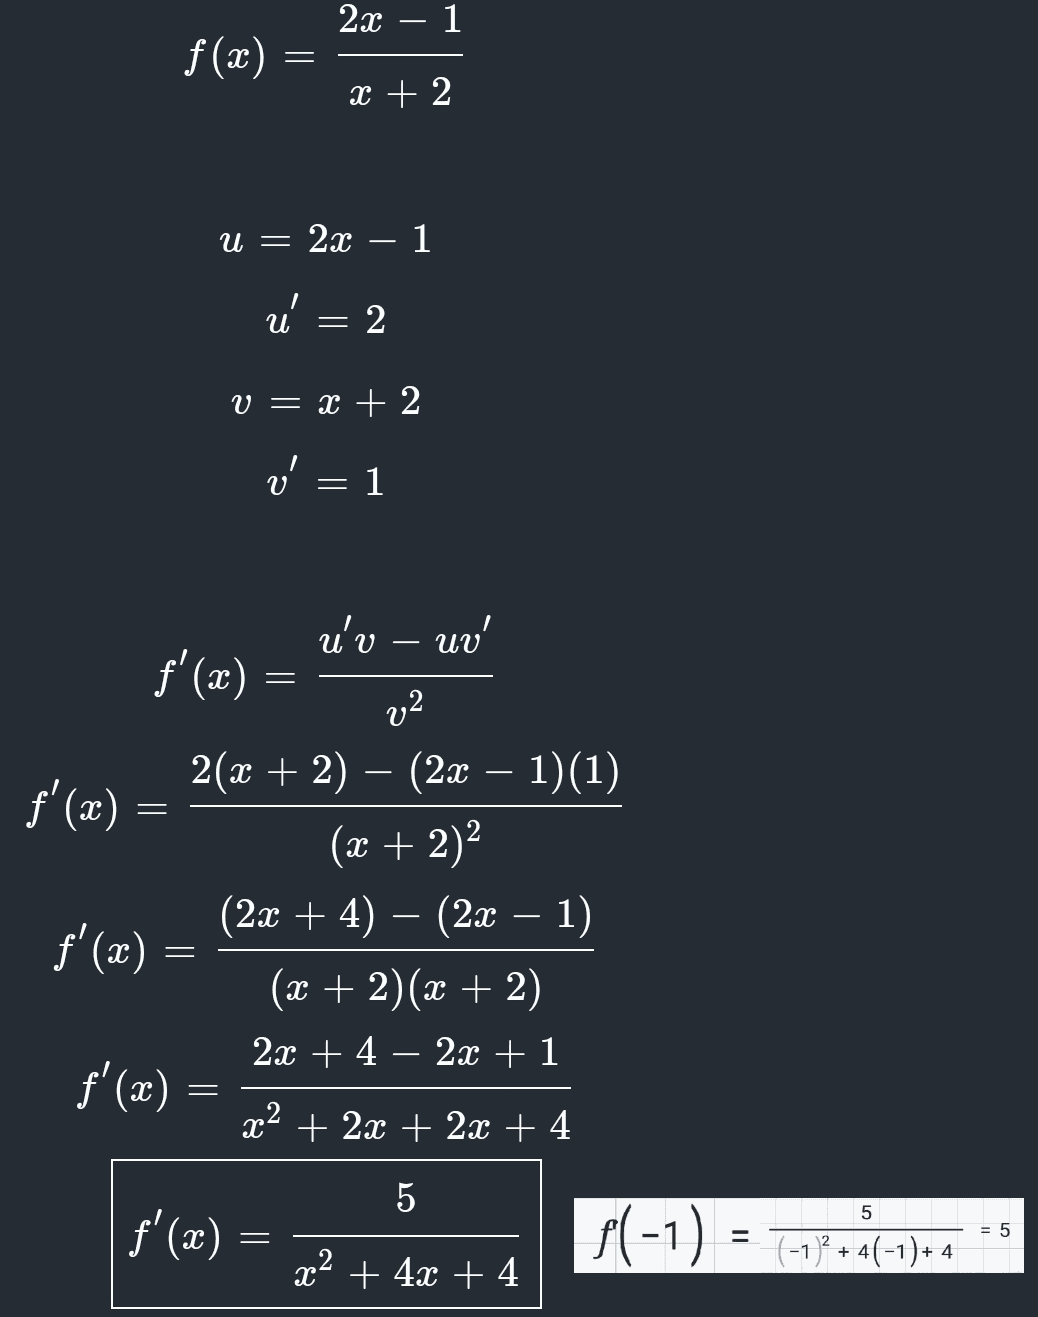 2x – 1 f(x) = X + 2 u = 2x – 1 น u - 2 V = x + 2 ' = 1 = = u'v – uv' f'(x) v2 2(x + 2) (2x – 1)(1) f'(x) (x + 2)2 (2x + 4) – (2x – 1) f'(x) (x + 2)(x + 2) 2x + 4 – 2x + 1 f'(x) x2 + 2x + 2x + 4 - 2. 5 f'(x) = f (-1) = (-1*7*(-) = 5 x2 + 4x + 4 -1)2 = + 4(-1)+4 